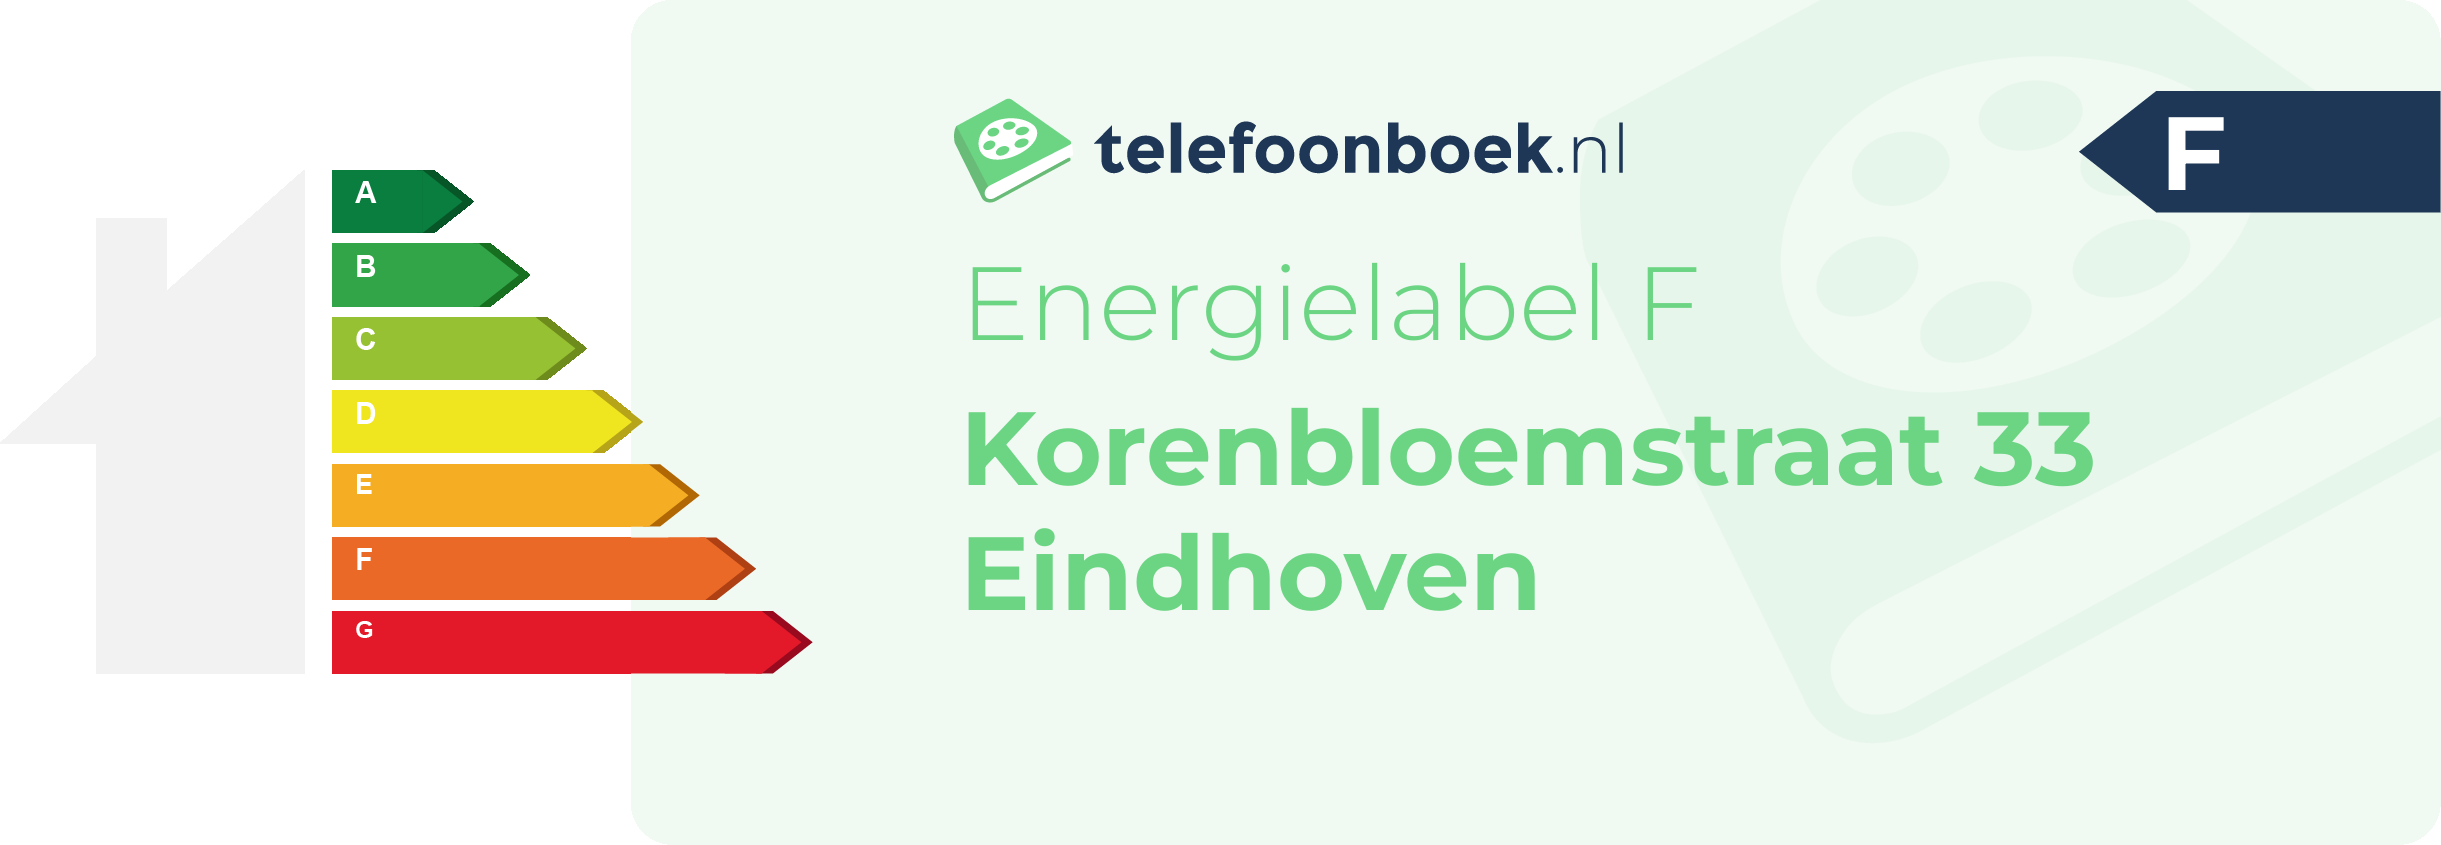 Energielabel Korenbloemstraat 33 Eindhoven